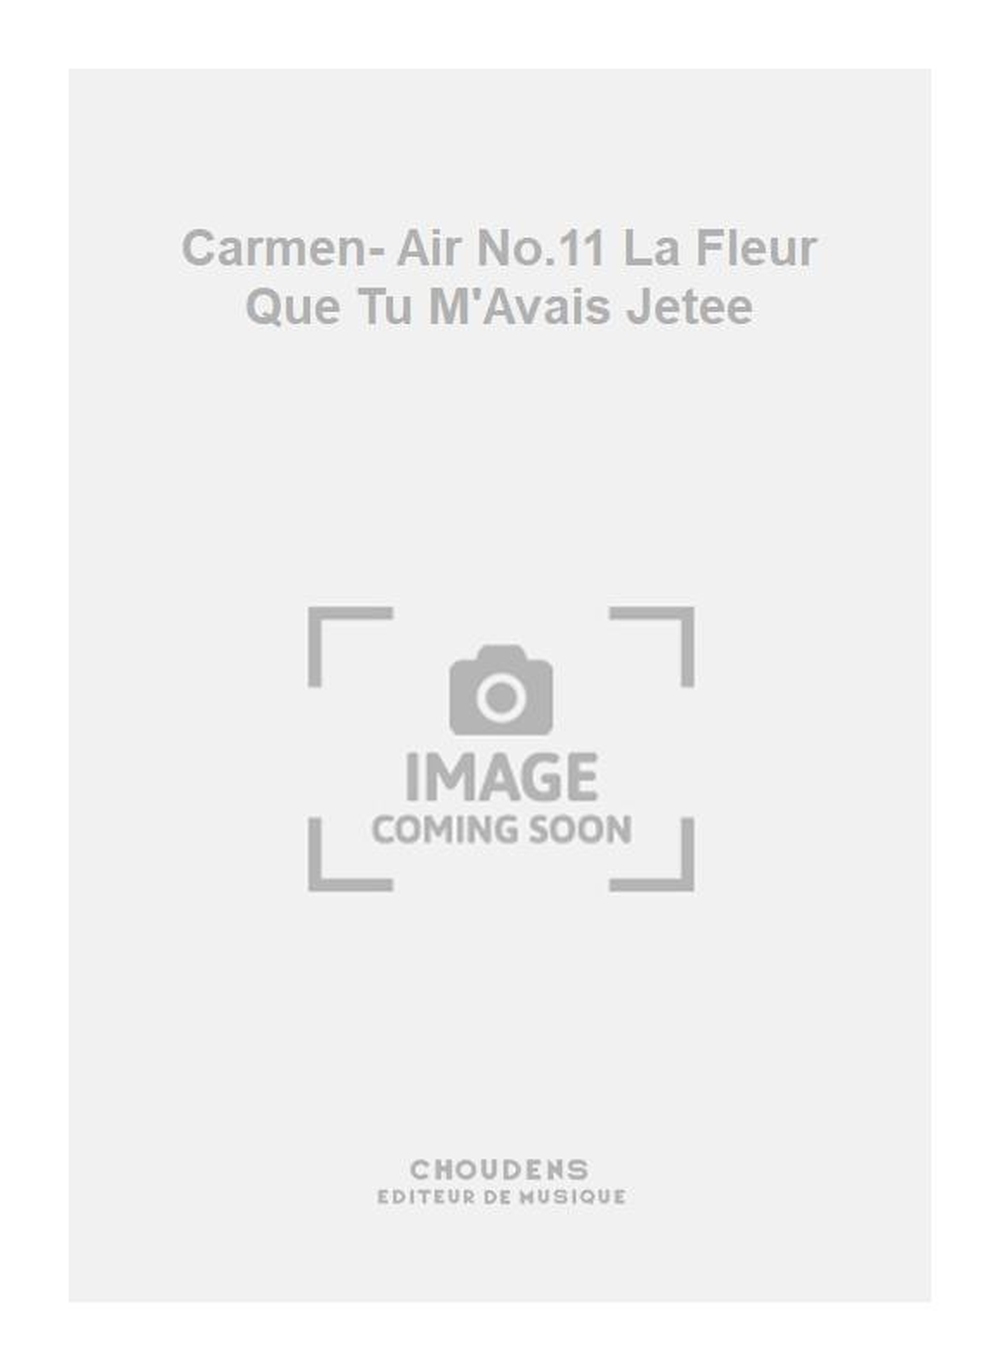 Georges Bizet: Carmen- Air No.11 La Fleur Que Tu M'Avais Jetee